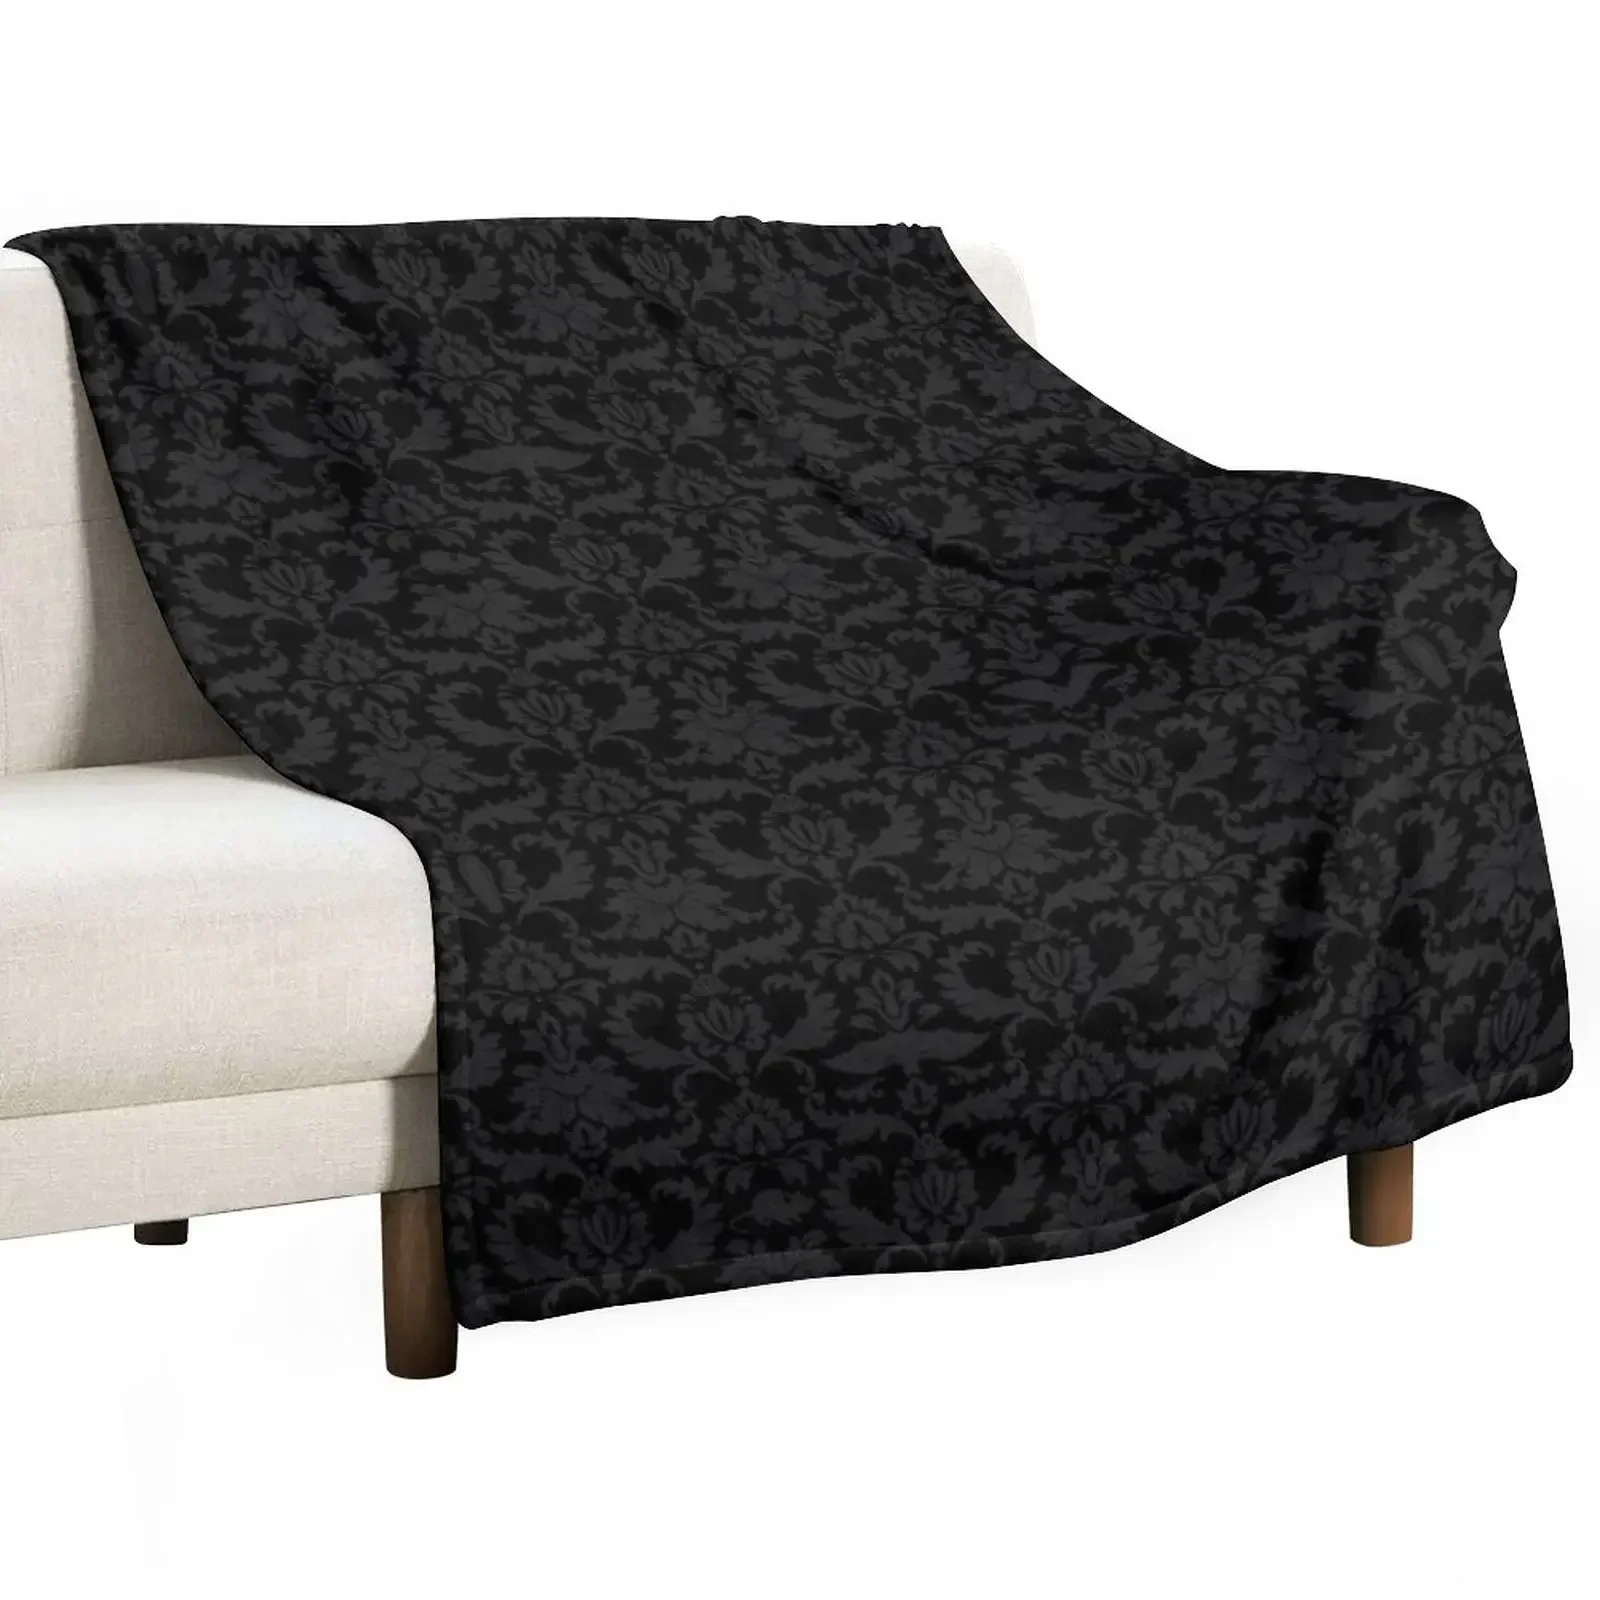 

Плед-одеяло в викторианском стиле (черный), декоративные диваны, гигантский диван, роскошные брендовые одеяла